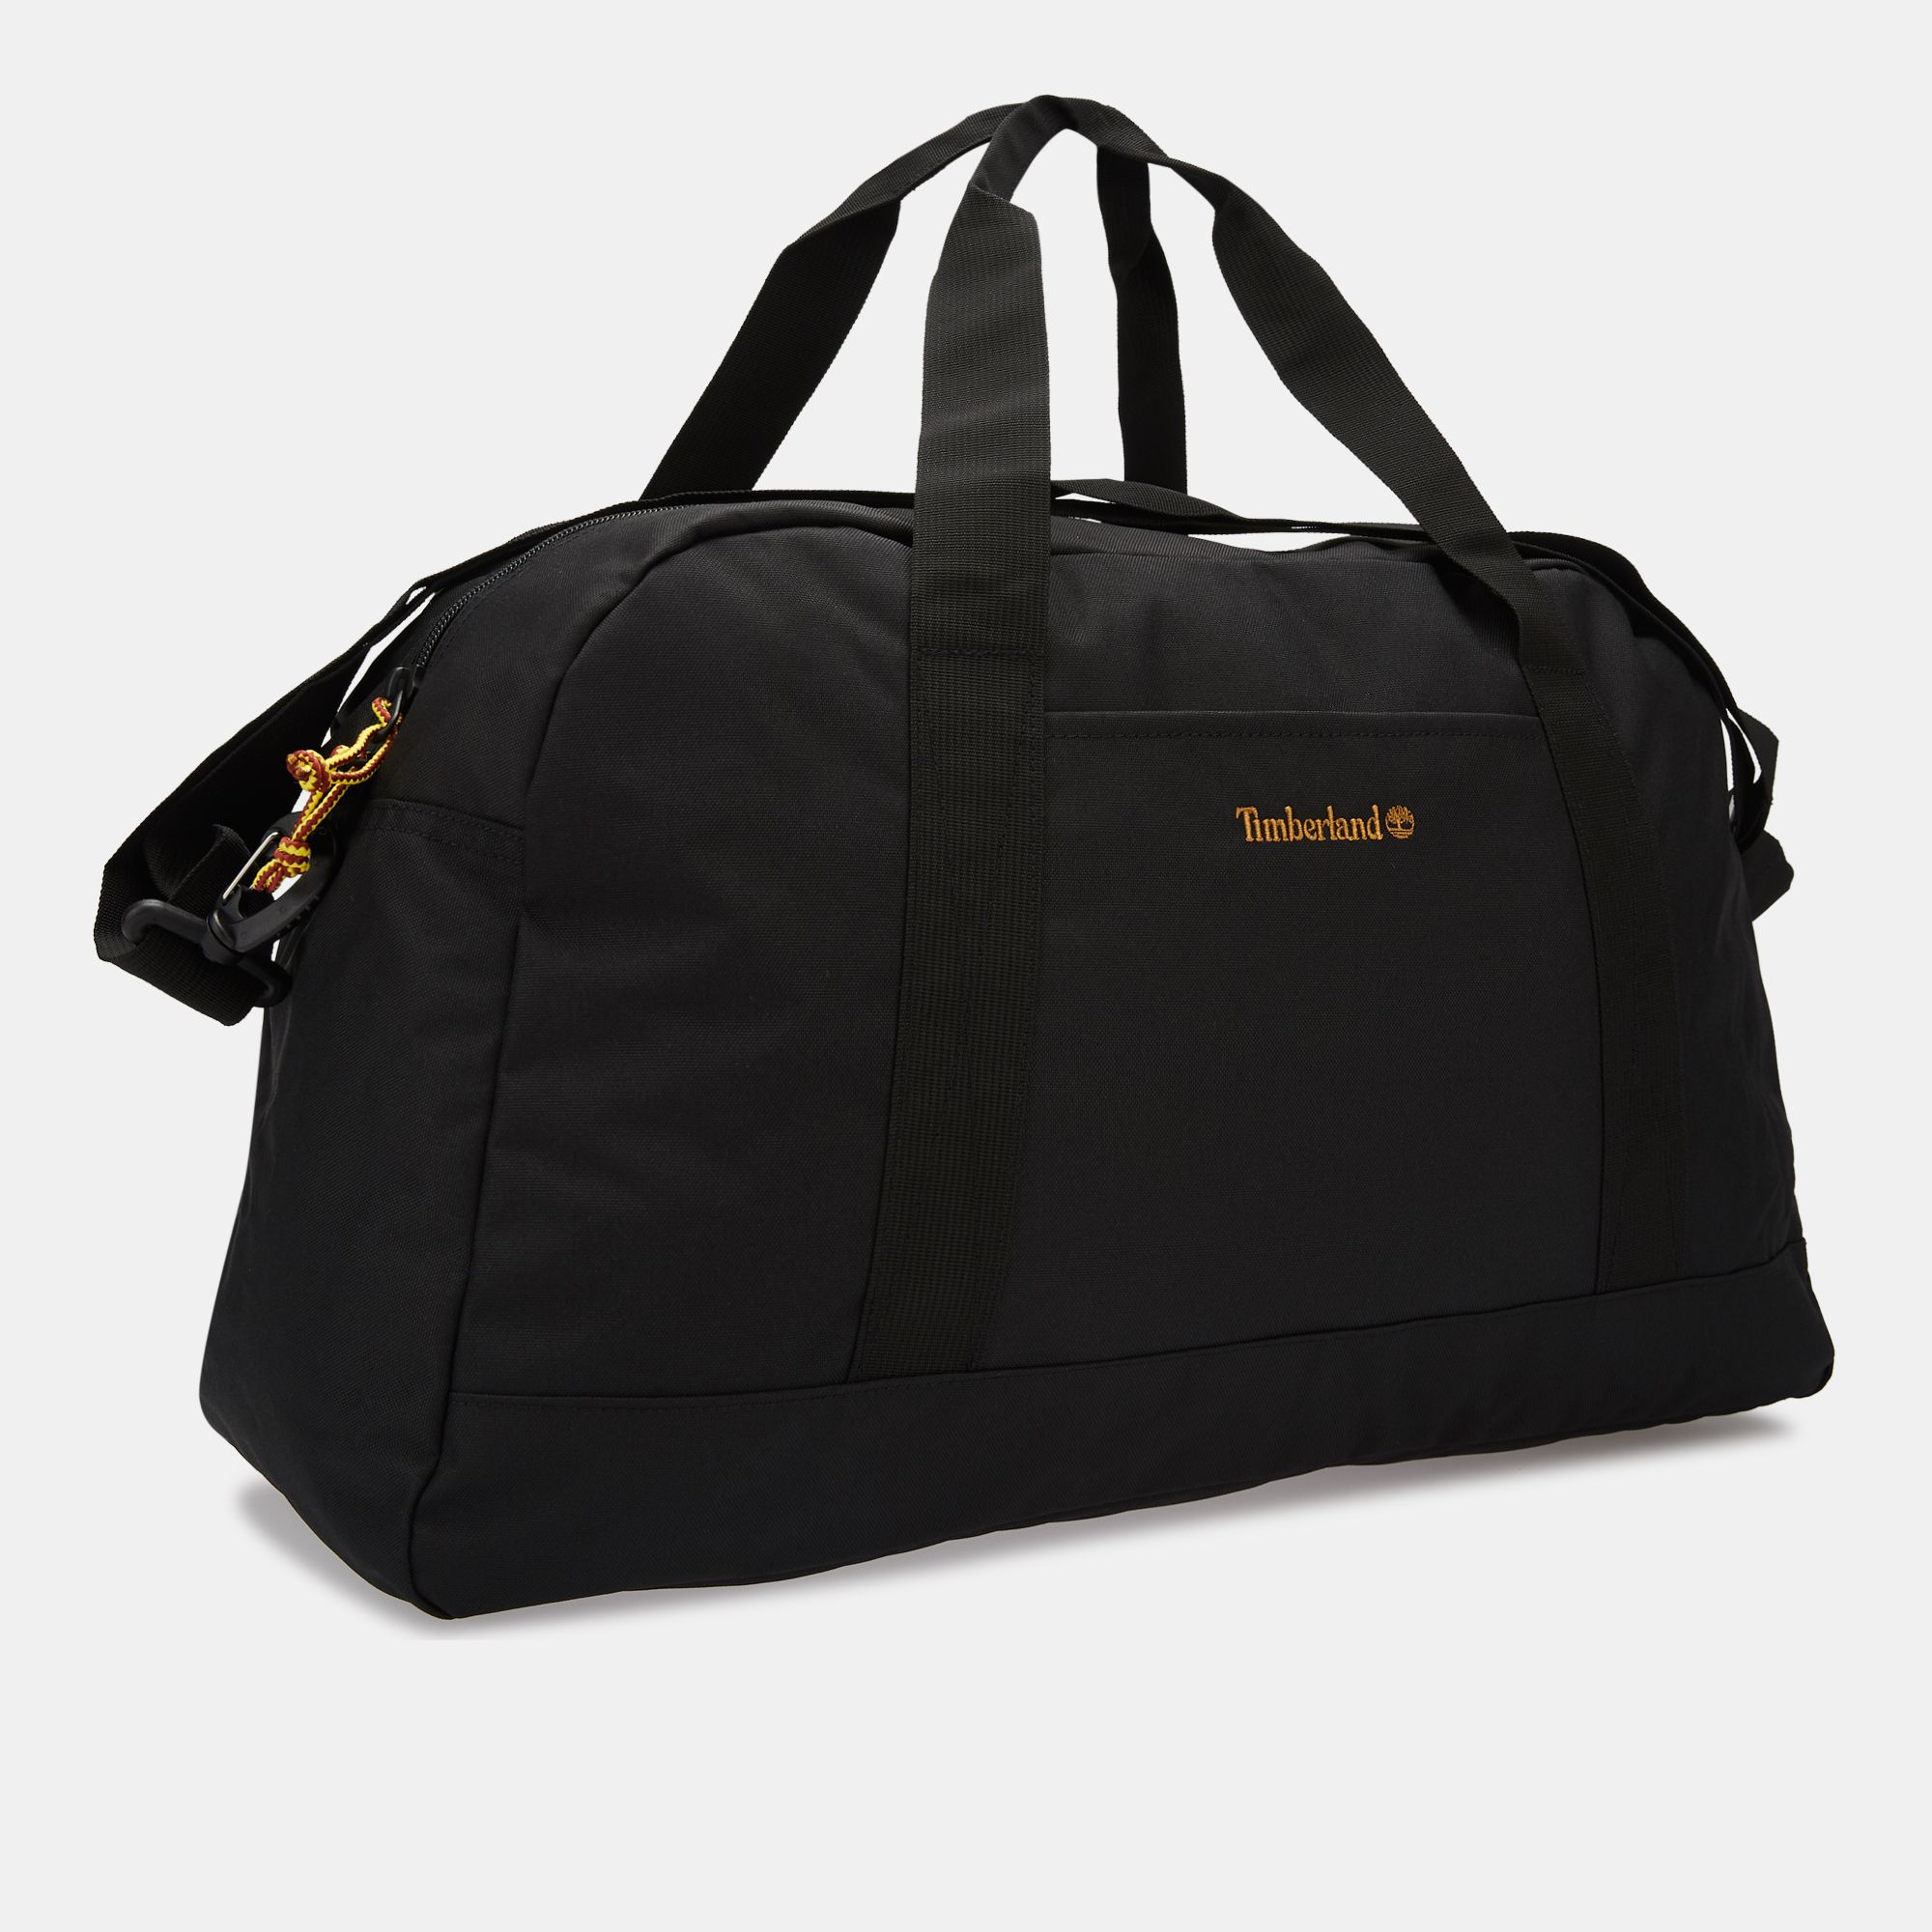 Timberland Crofton Duffel Bag | Duffel Bags | Bags & Luggages ...